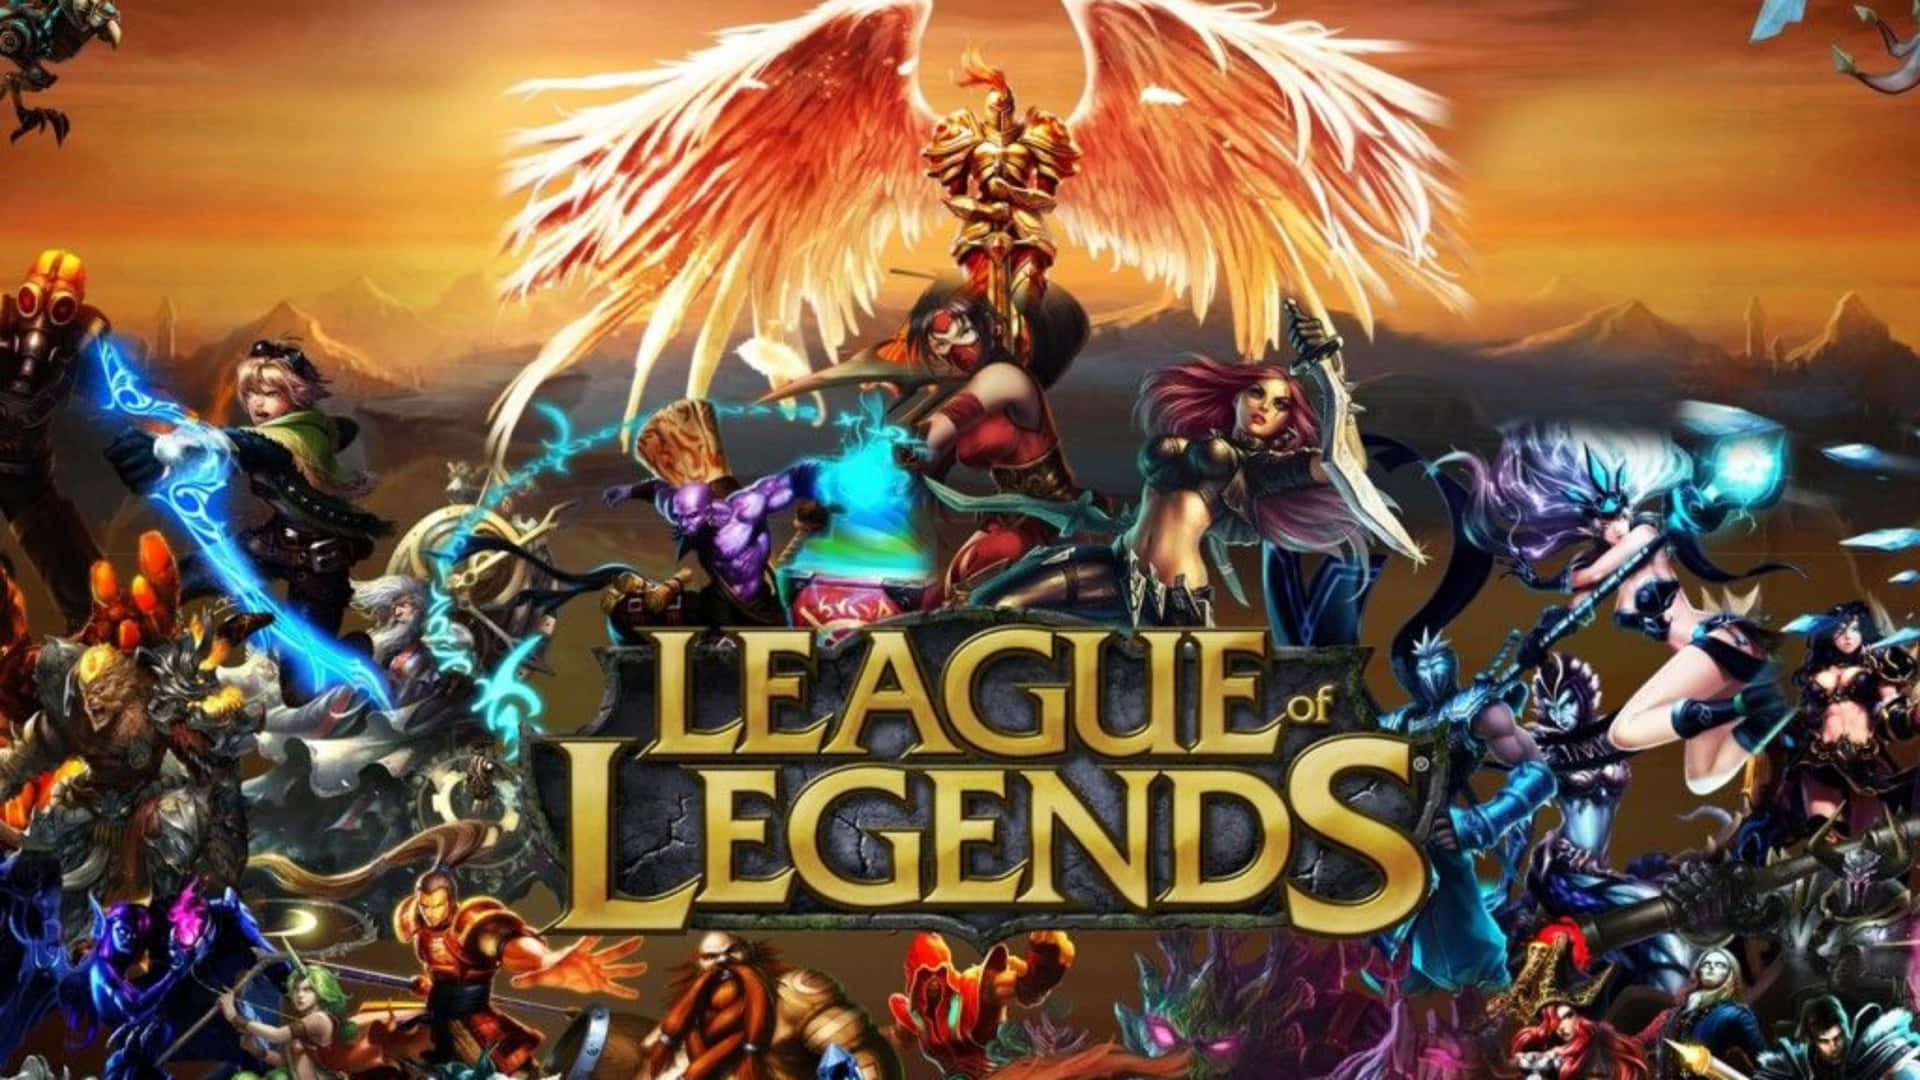 Oplevepiske Kampe Med Fantastisk 4k Visuals I League Of Legends!